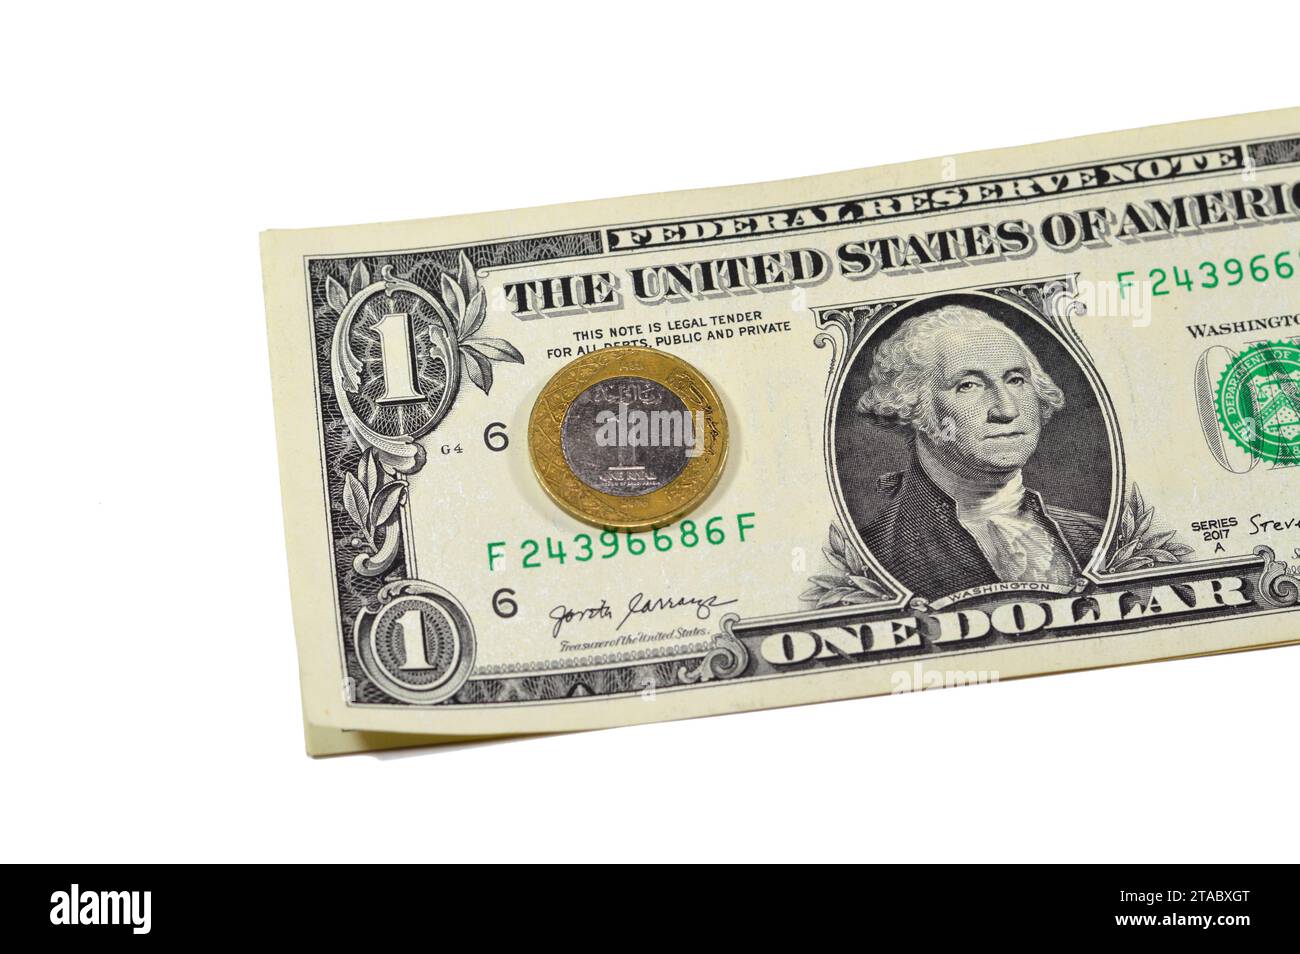 Une pièce de monnaie de riyal d'Arabie saoudite année 2016 sur fond de billet de papier de 1 dollar américain USD, un métal SAR et un billet de banque USD argent saoudien et américain, 1 S. Banque D'Images